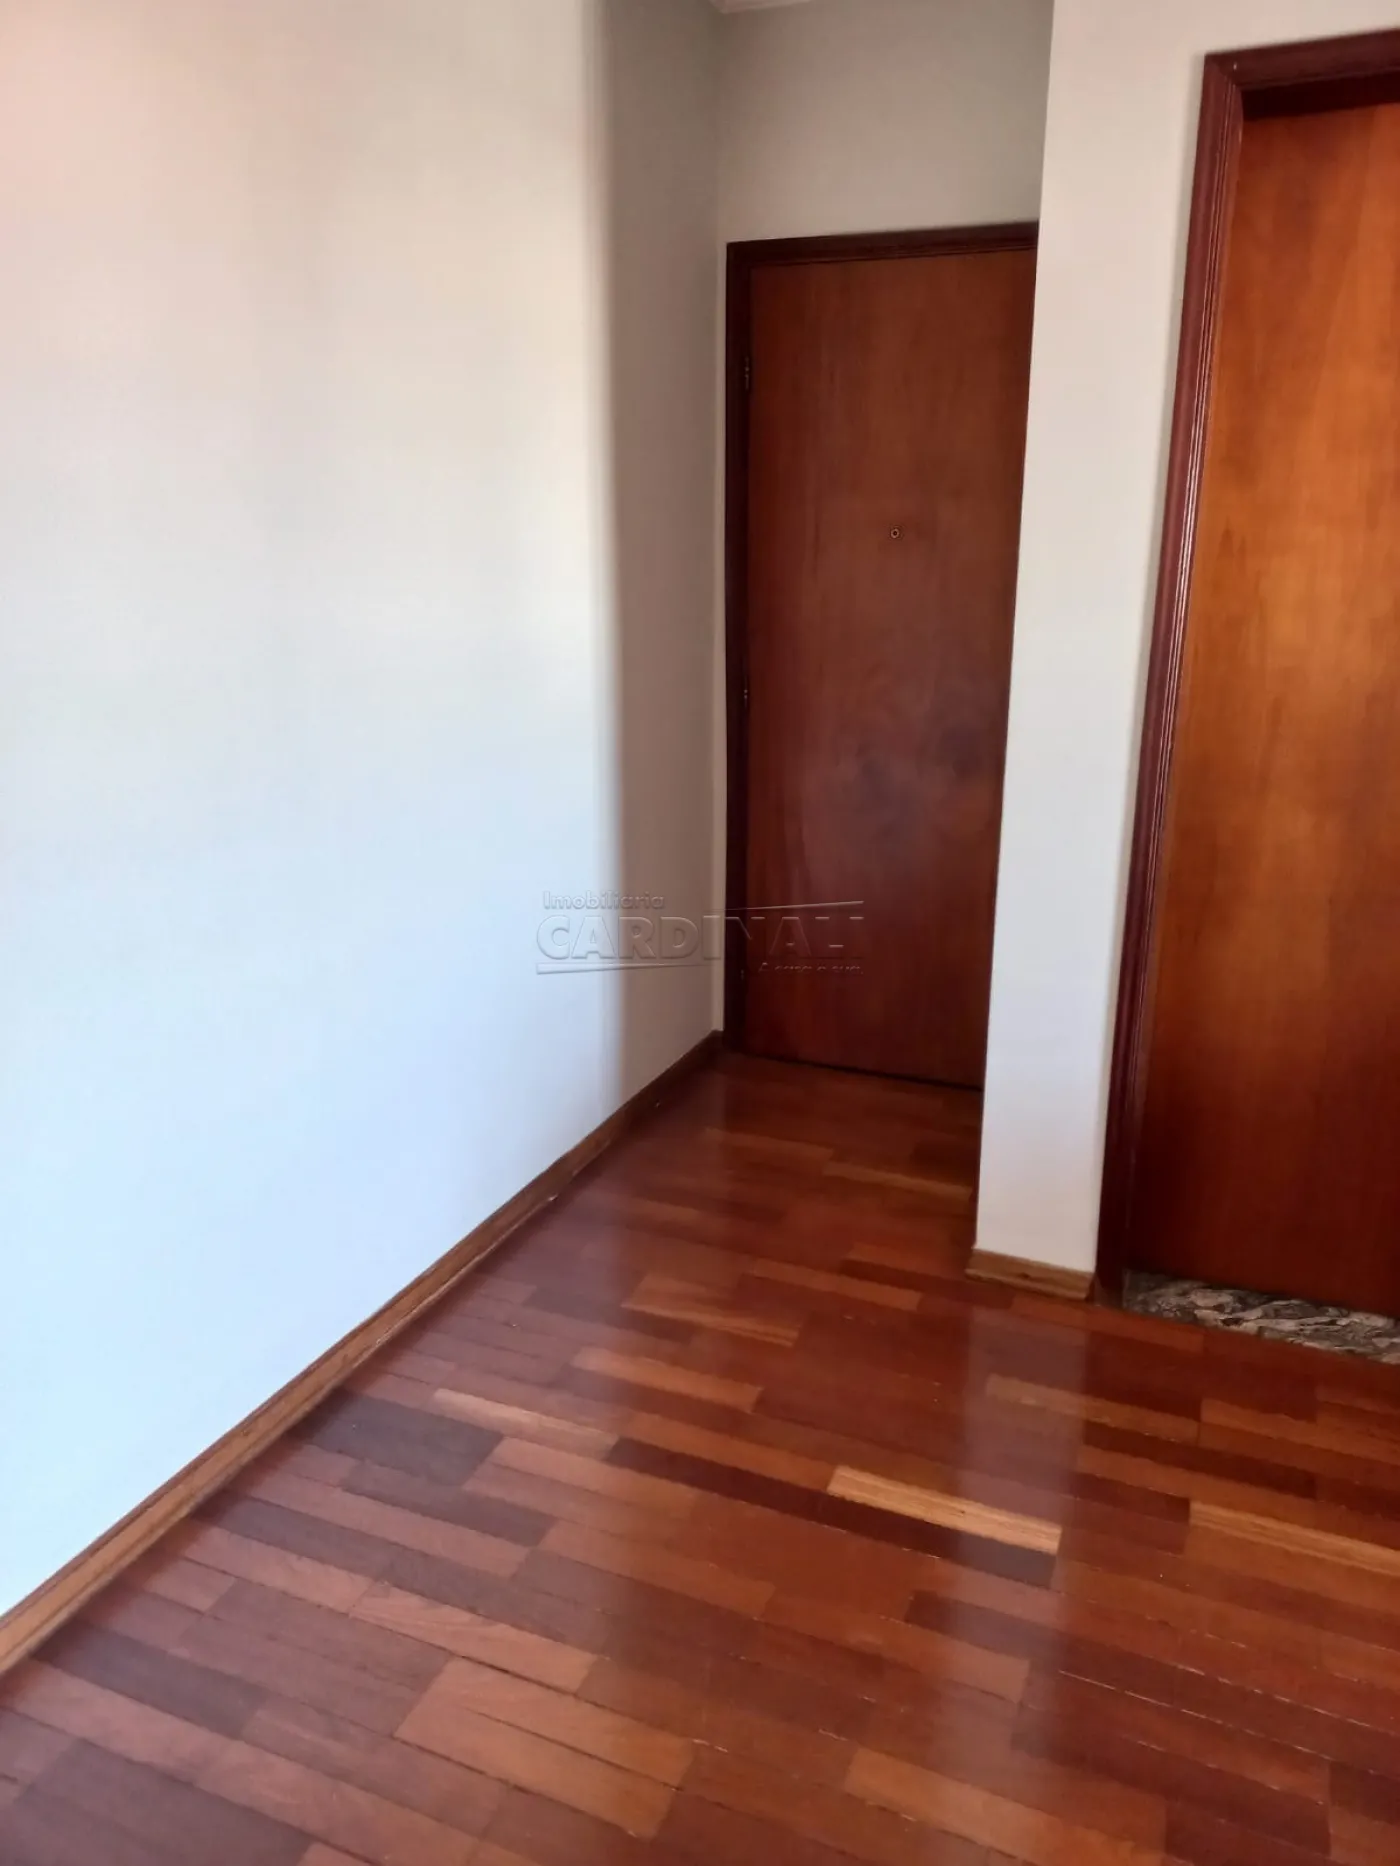 Apartamento / Padrão em São Carlos , Comprar por R$350.000,00